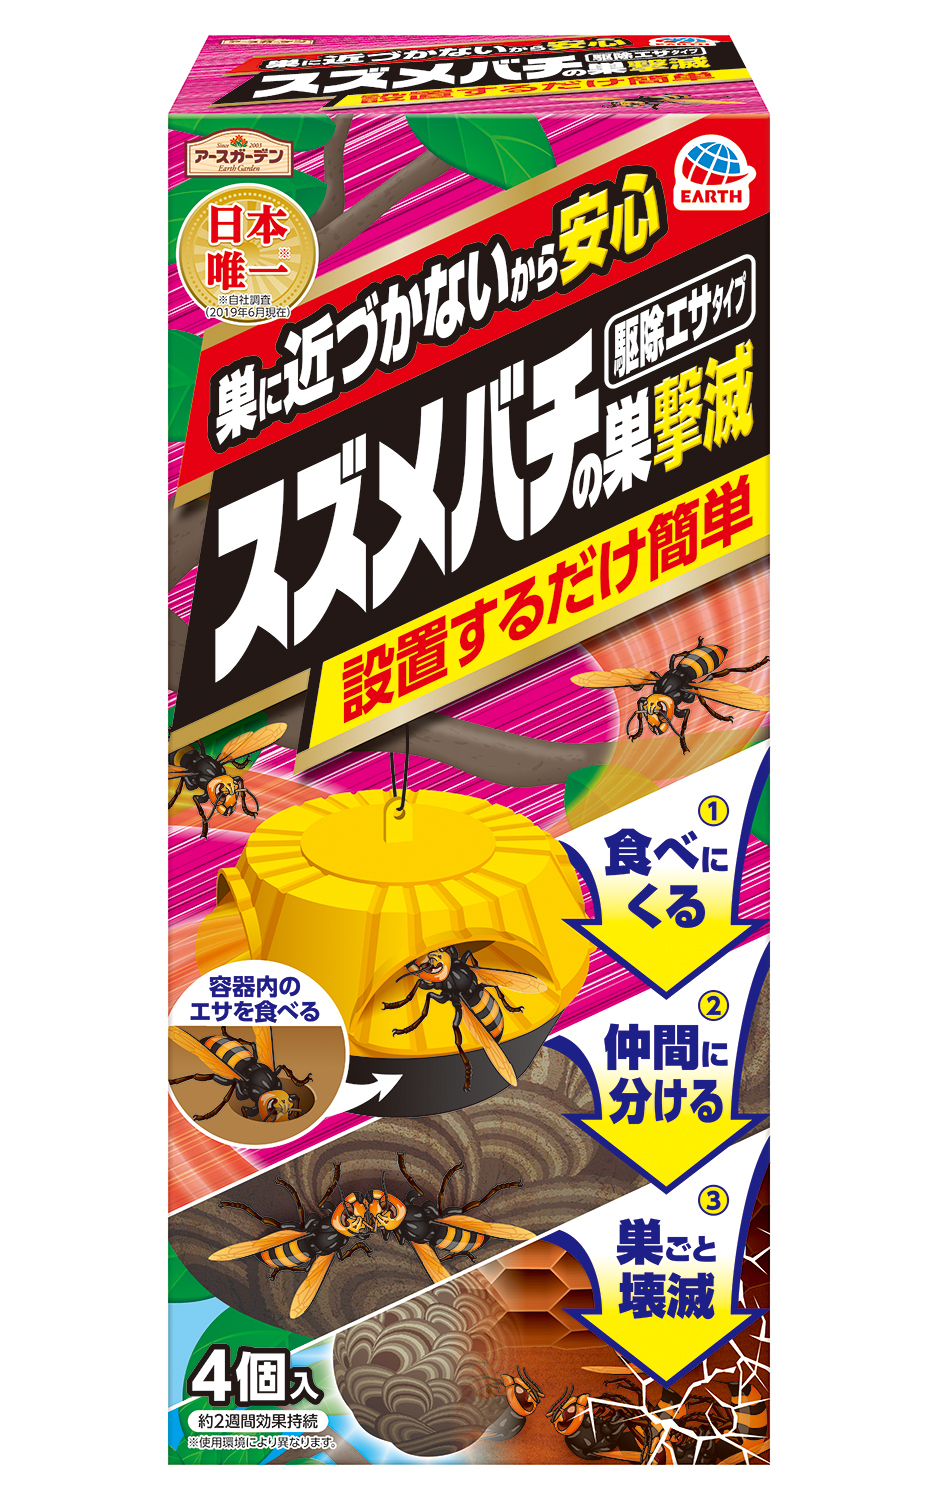 日本唯一 1 巣に近づかなくても巣ごと退治できるスズメバチの巣駆除剤 スズメバチの巣撃滅 駆除エサタイプ 4個入 アース製薬株式会社のプレスリリース